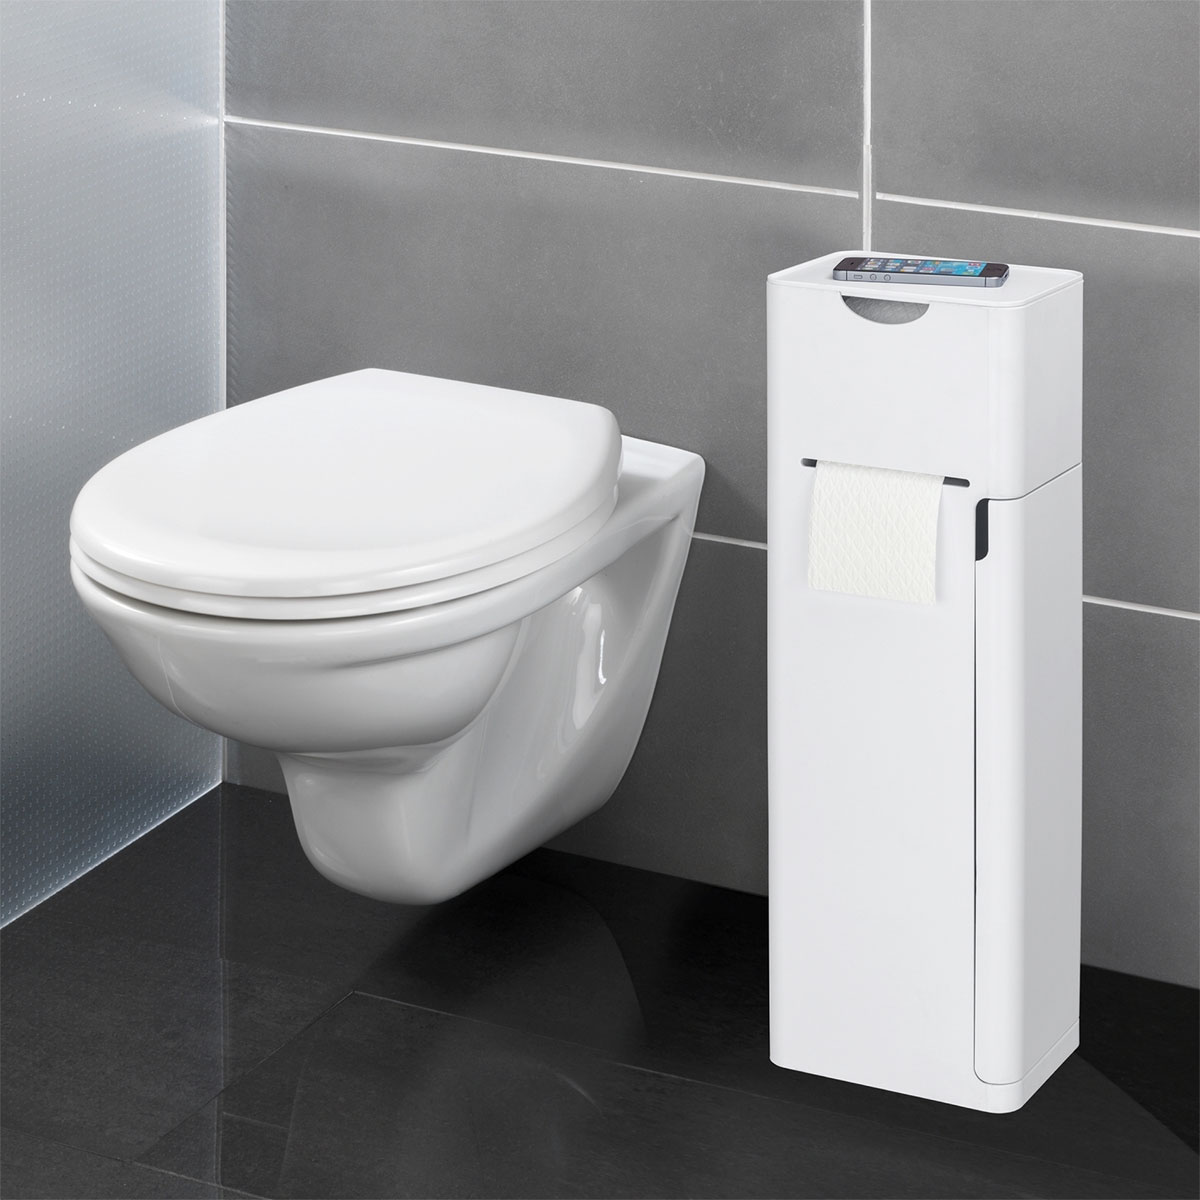 Wenko 6 in 1 Stand Stauraumfächer Imon integrierter Toilettenpapierhalter 514825 WC-Bürstenhalter WC-Garnitur und Ersatzrollenhalter Ablage Weiß matt 